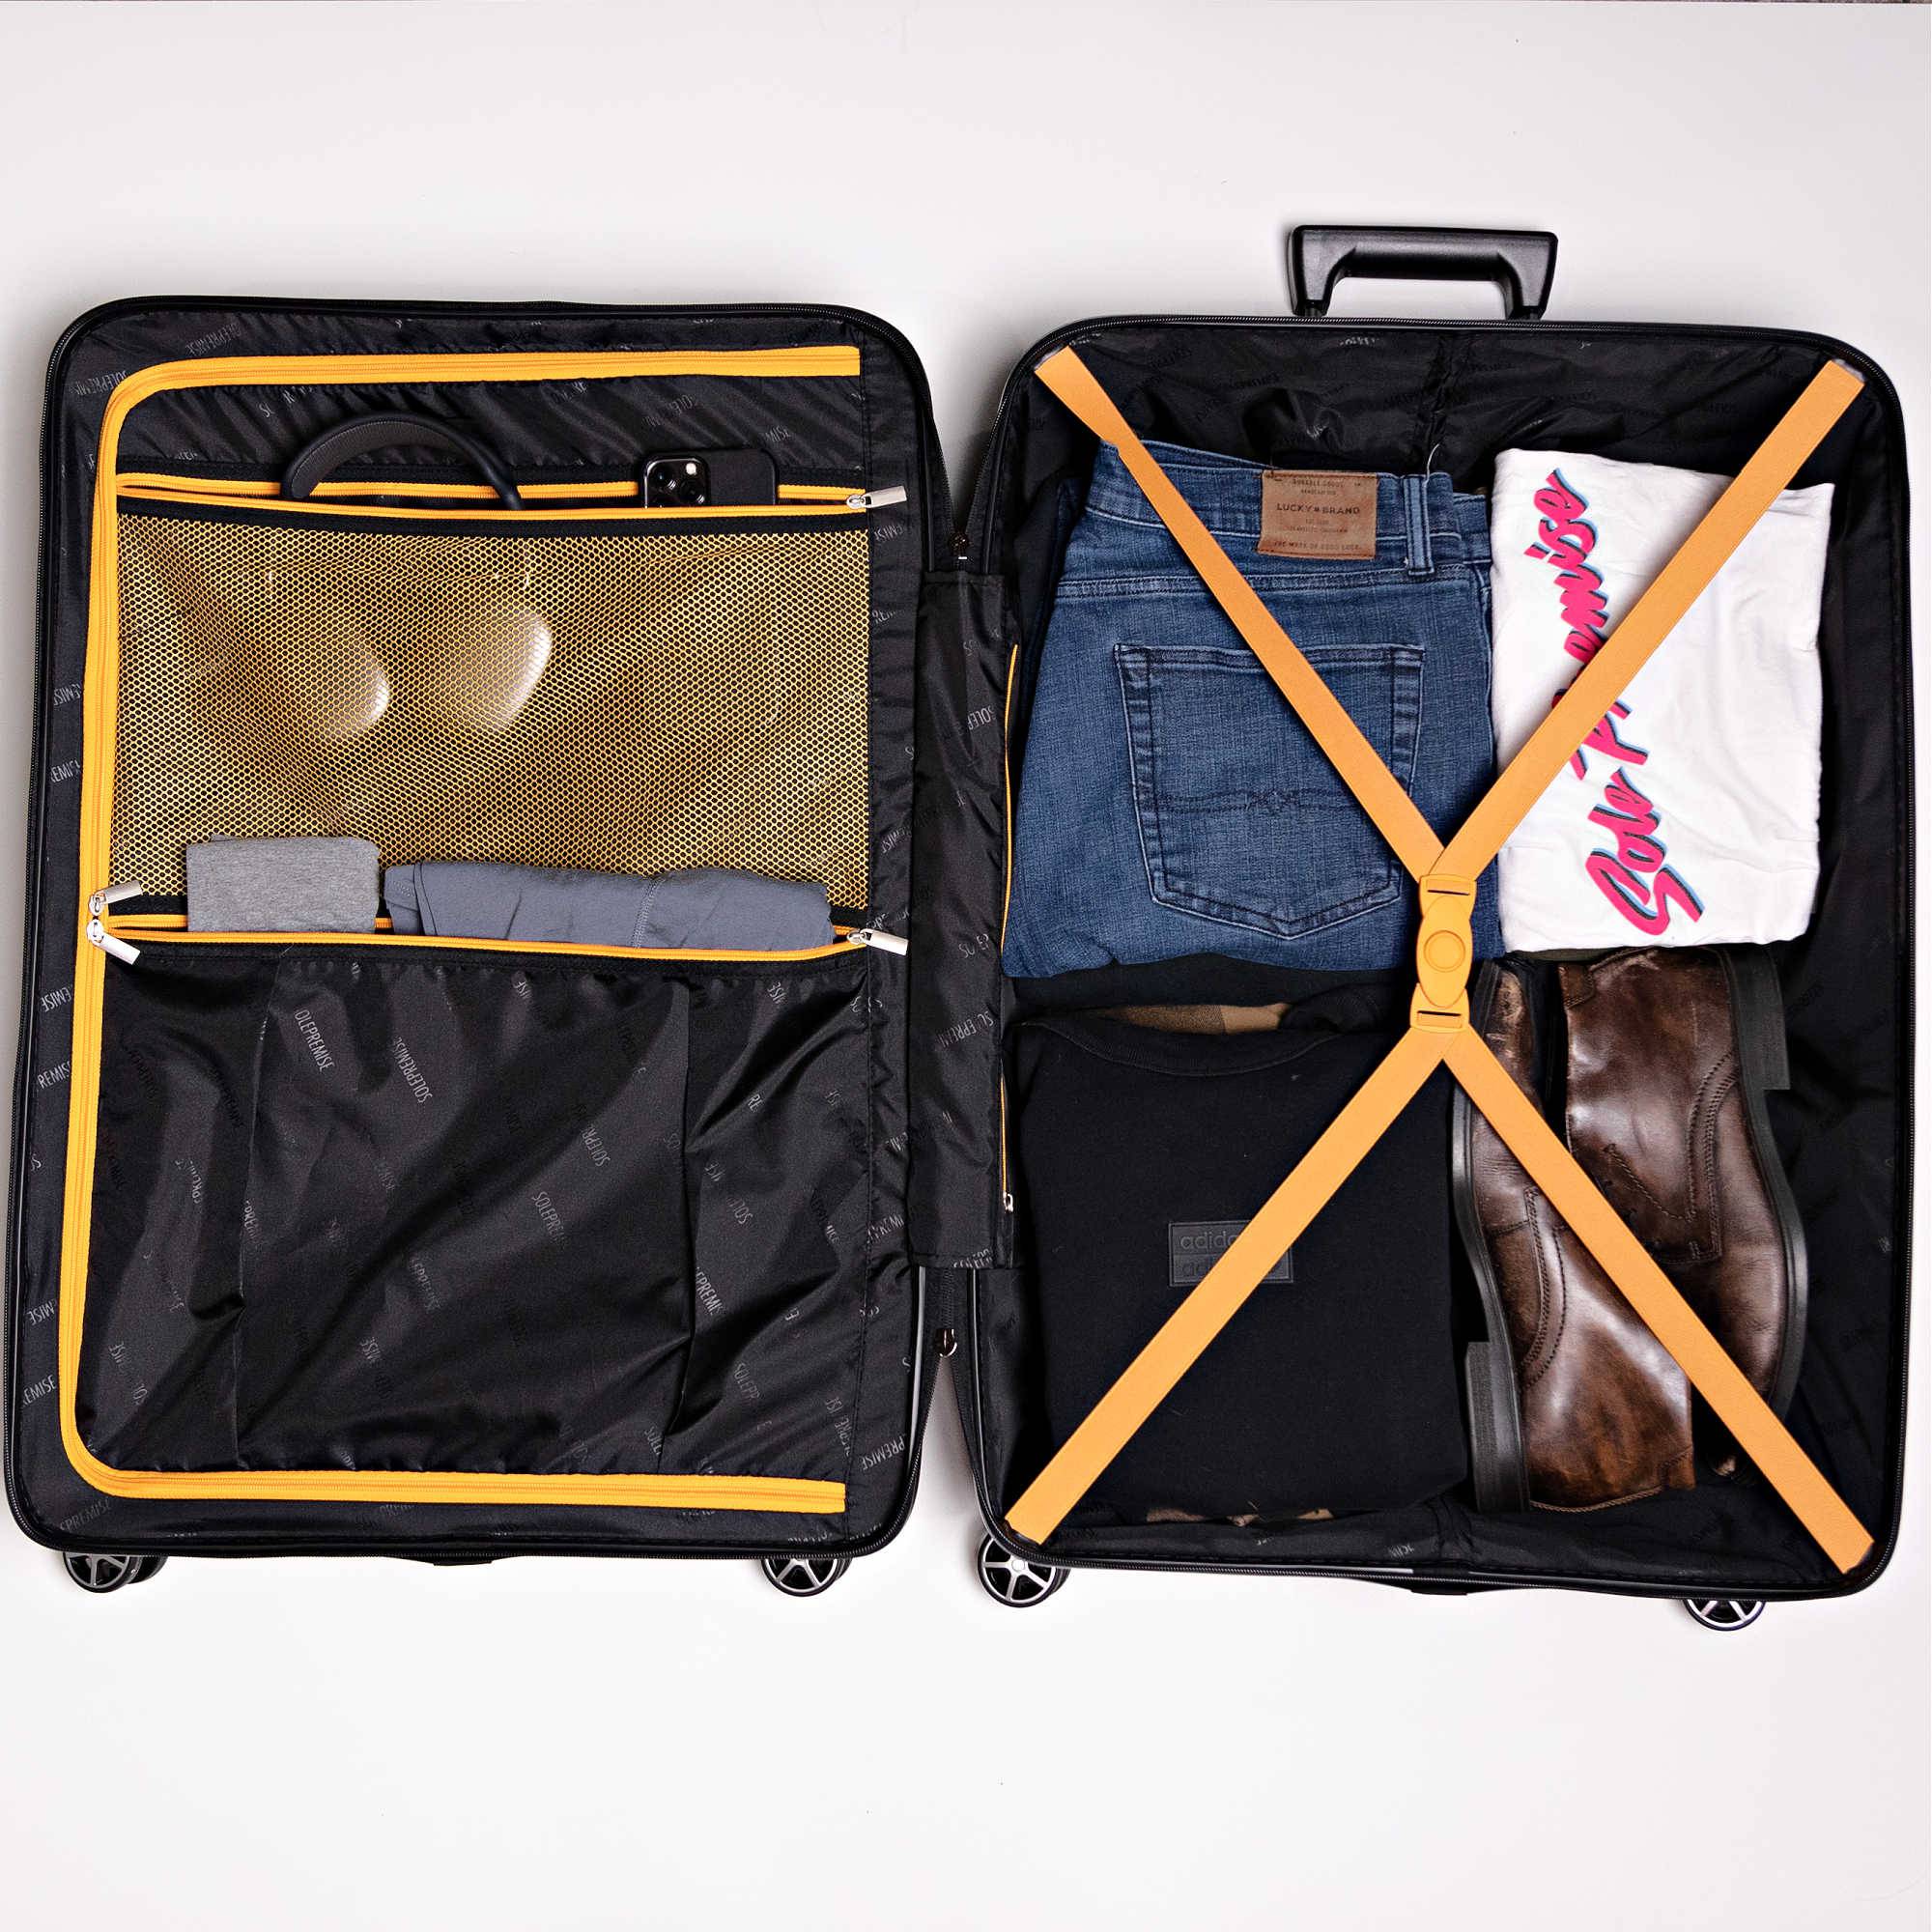 Hardcase Roller Luggage Set (28', 24' and 20') - Sole Premise